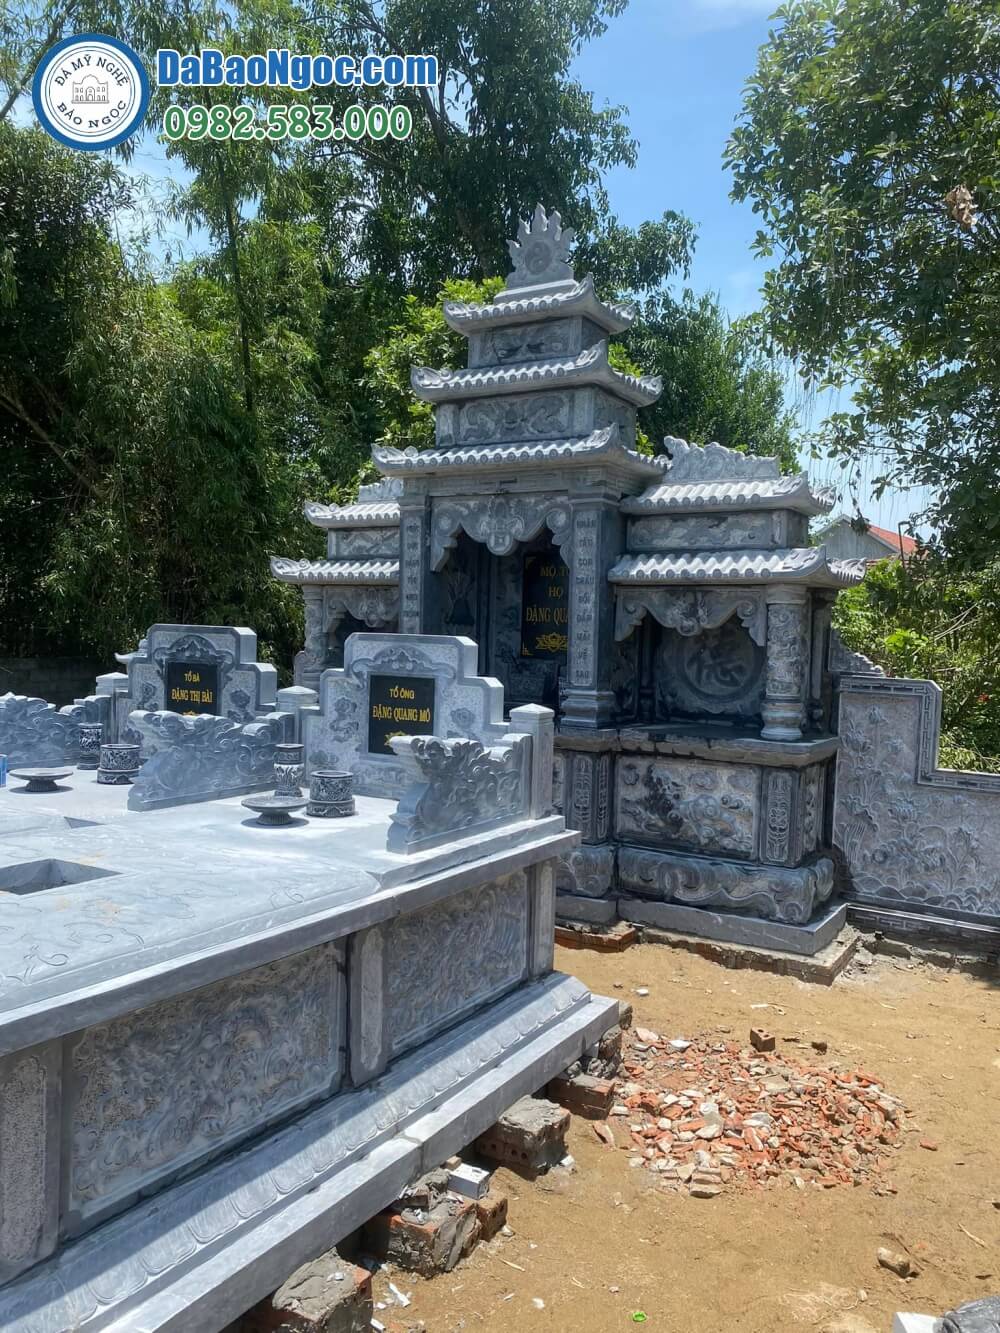 Làm mộ đá nguyên khối tại Kiên Giang | Cơ sở chế tác uy tín, báo giá, mẫu thiết kế riêng theo yêu cầu